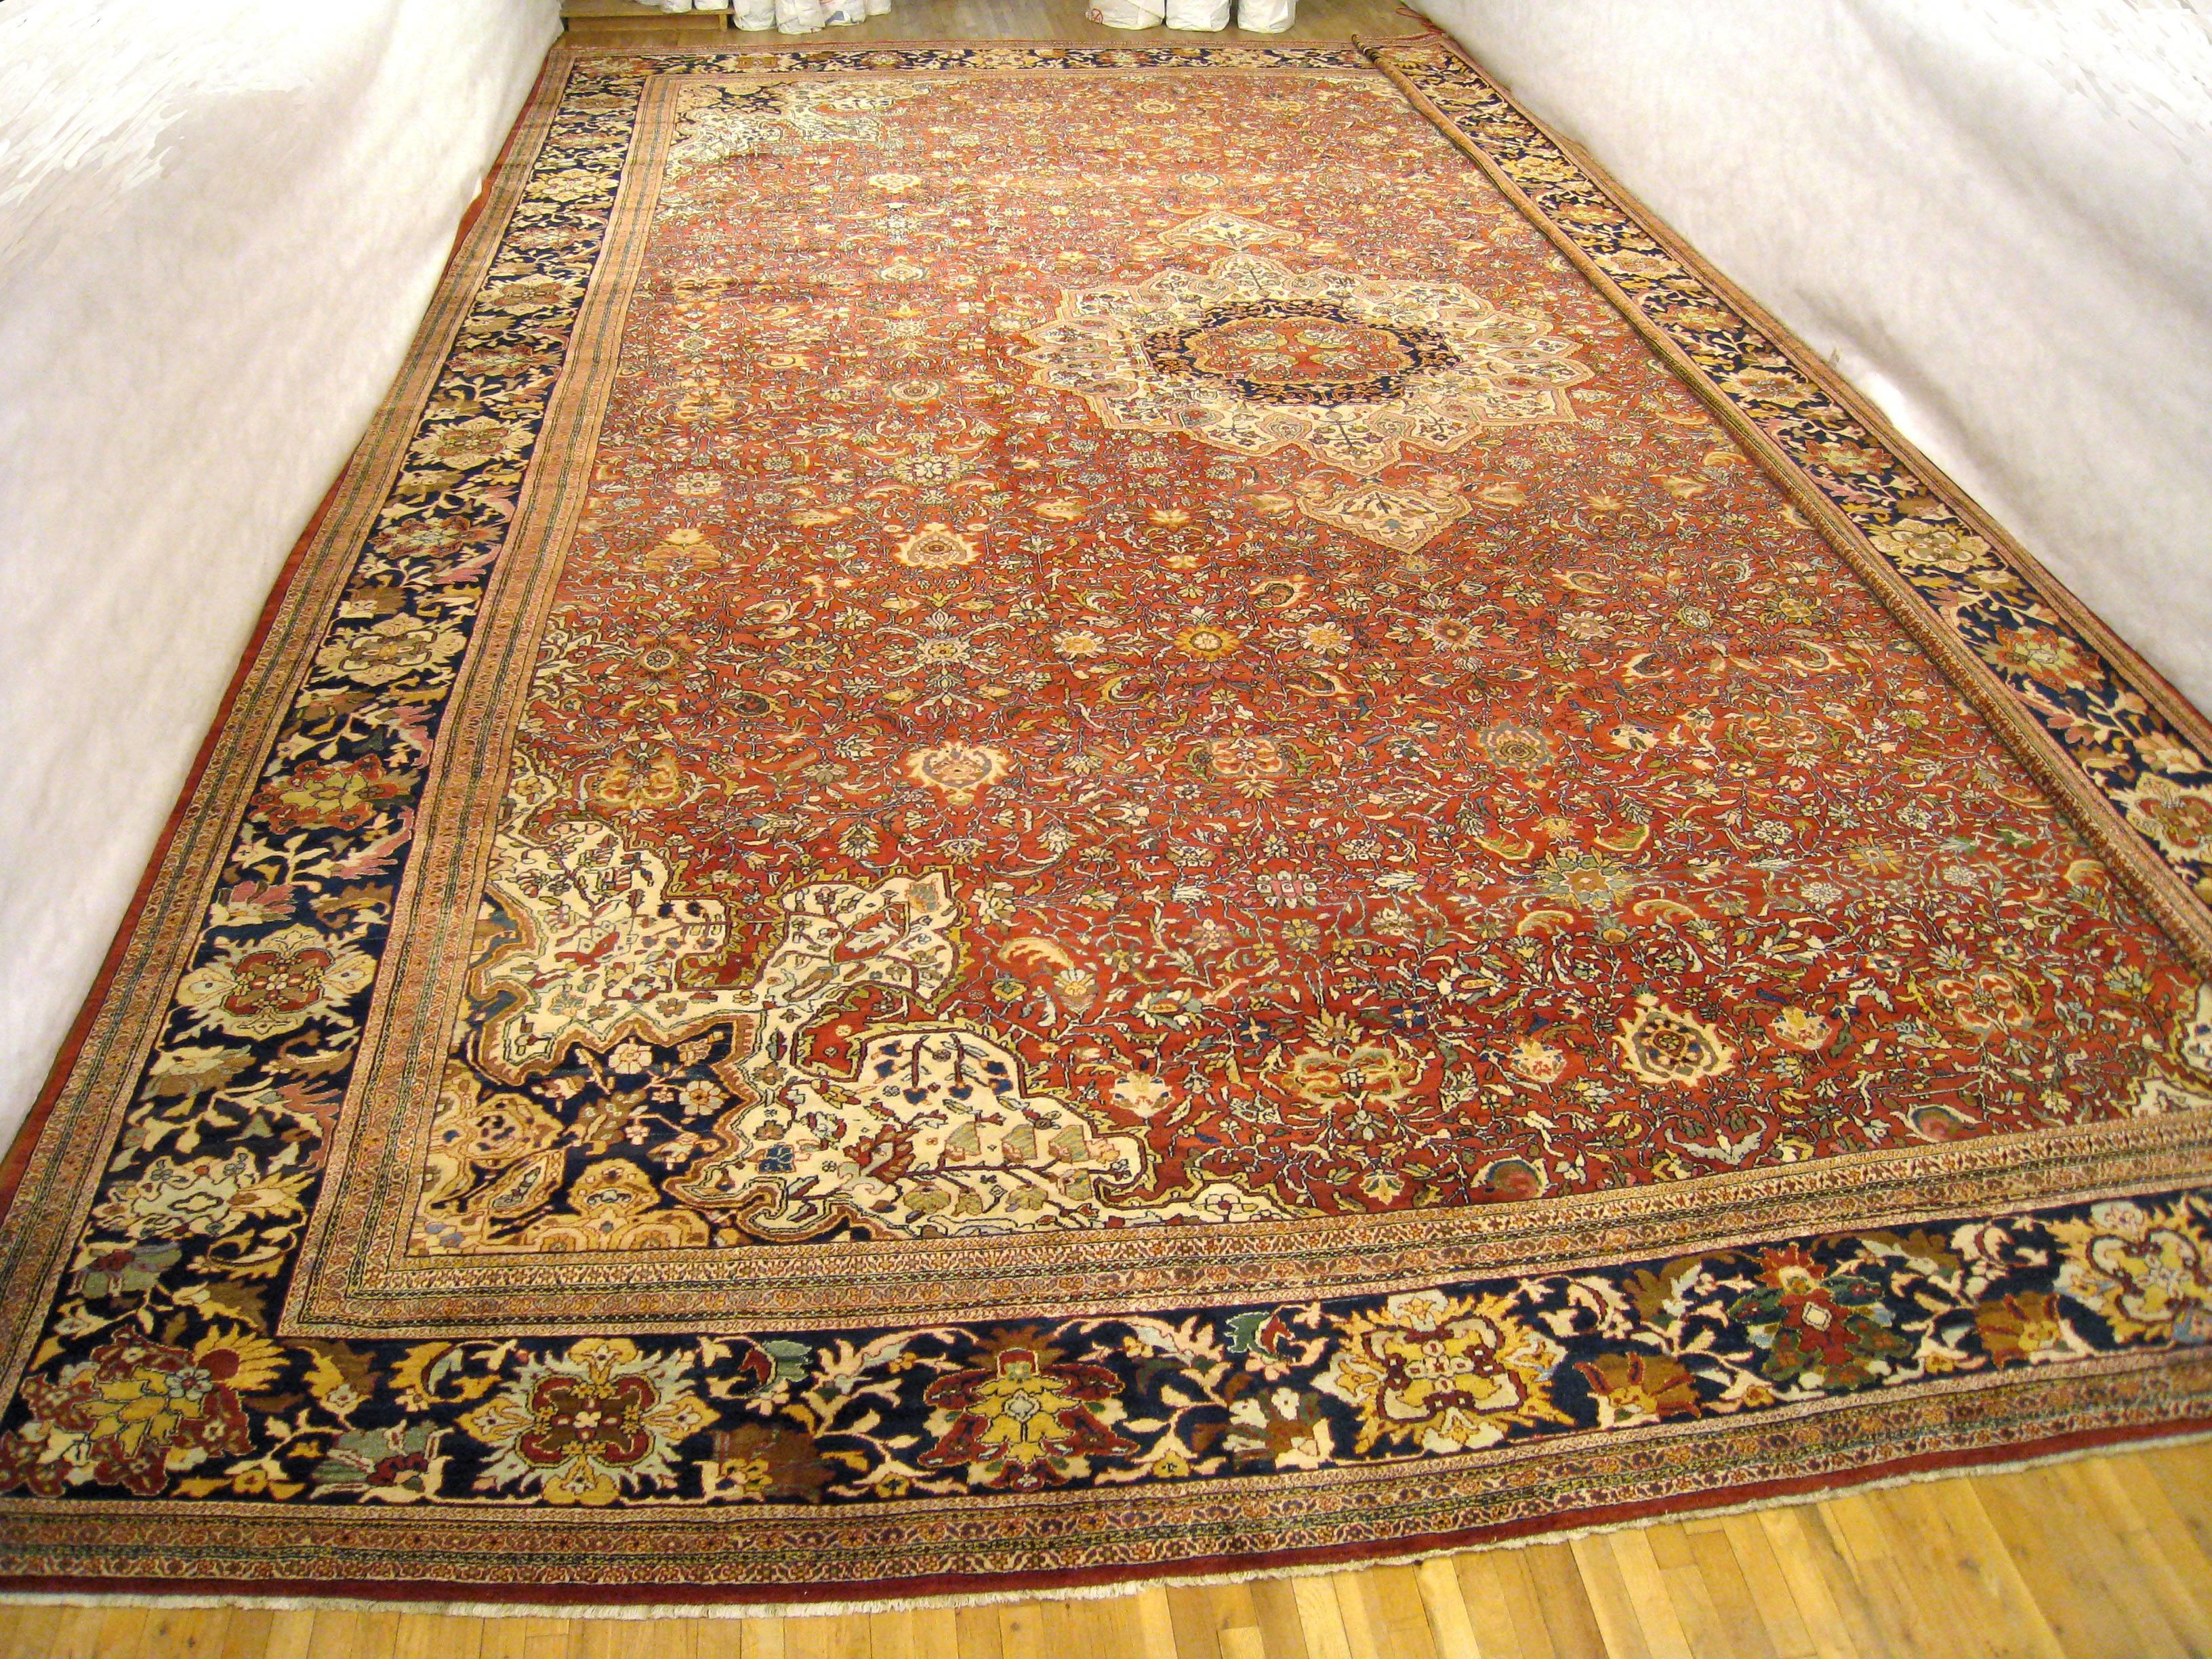 Tapis oriental persan antique Ziegler Sultanabad, vers 1890, dimensions : 27'4 H x 19'1 L. Ce tapis classique en laine noué à la main présente un médaillon central ivoire sur un champ primaire rouge corail, avec des écoinçons réciproques. Entouré